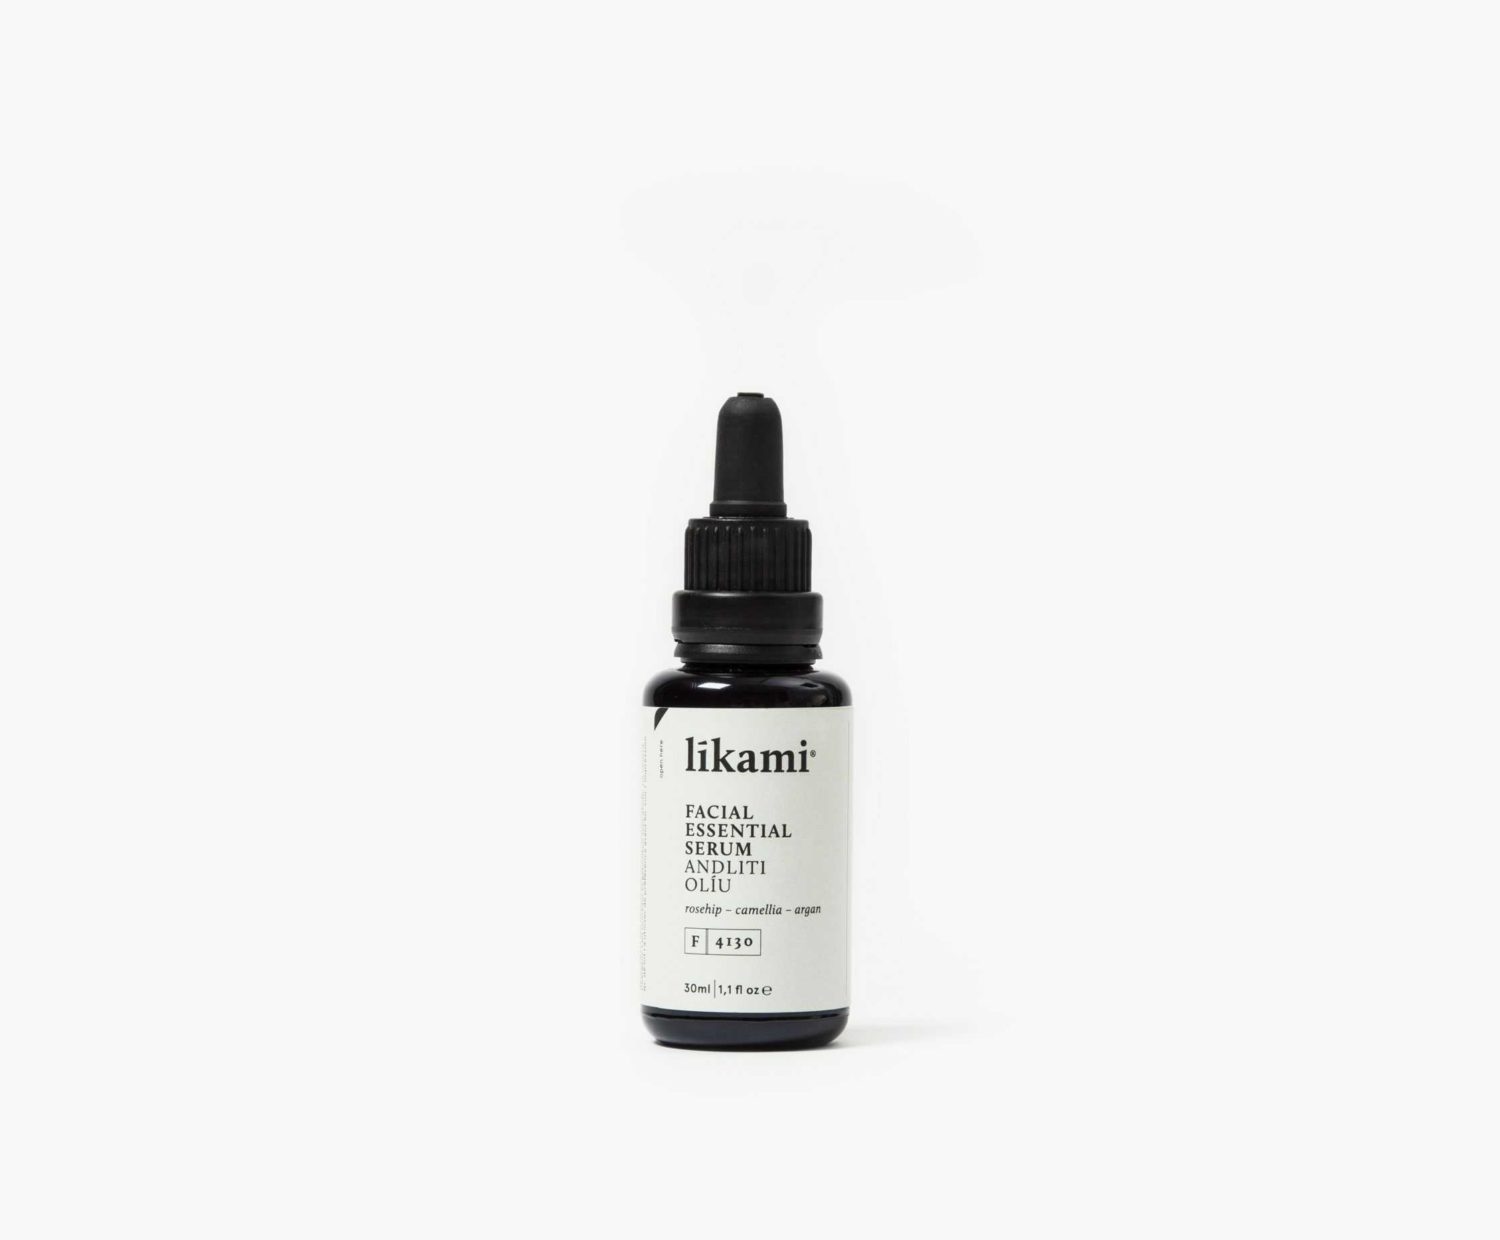 Likami - Facial essential serum